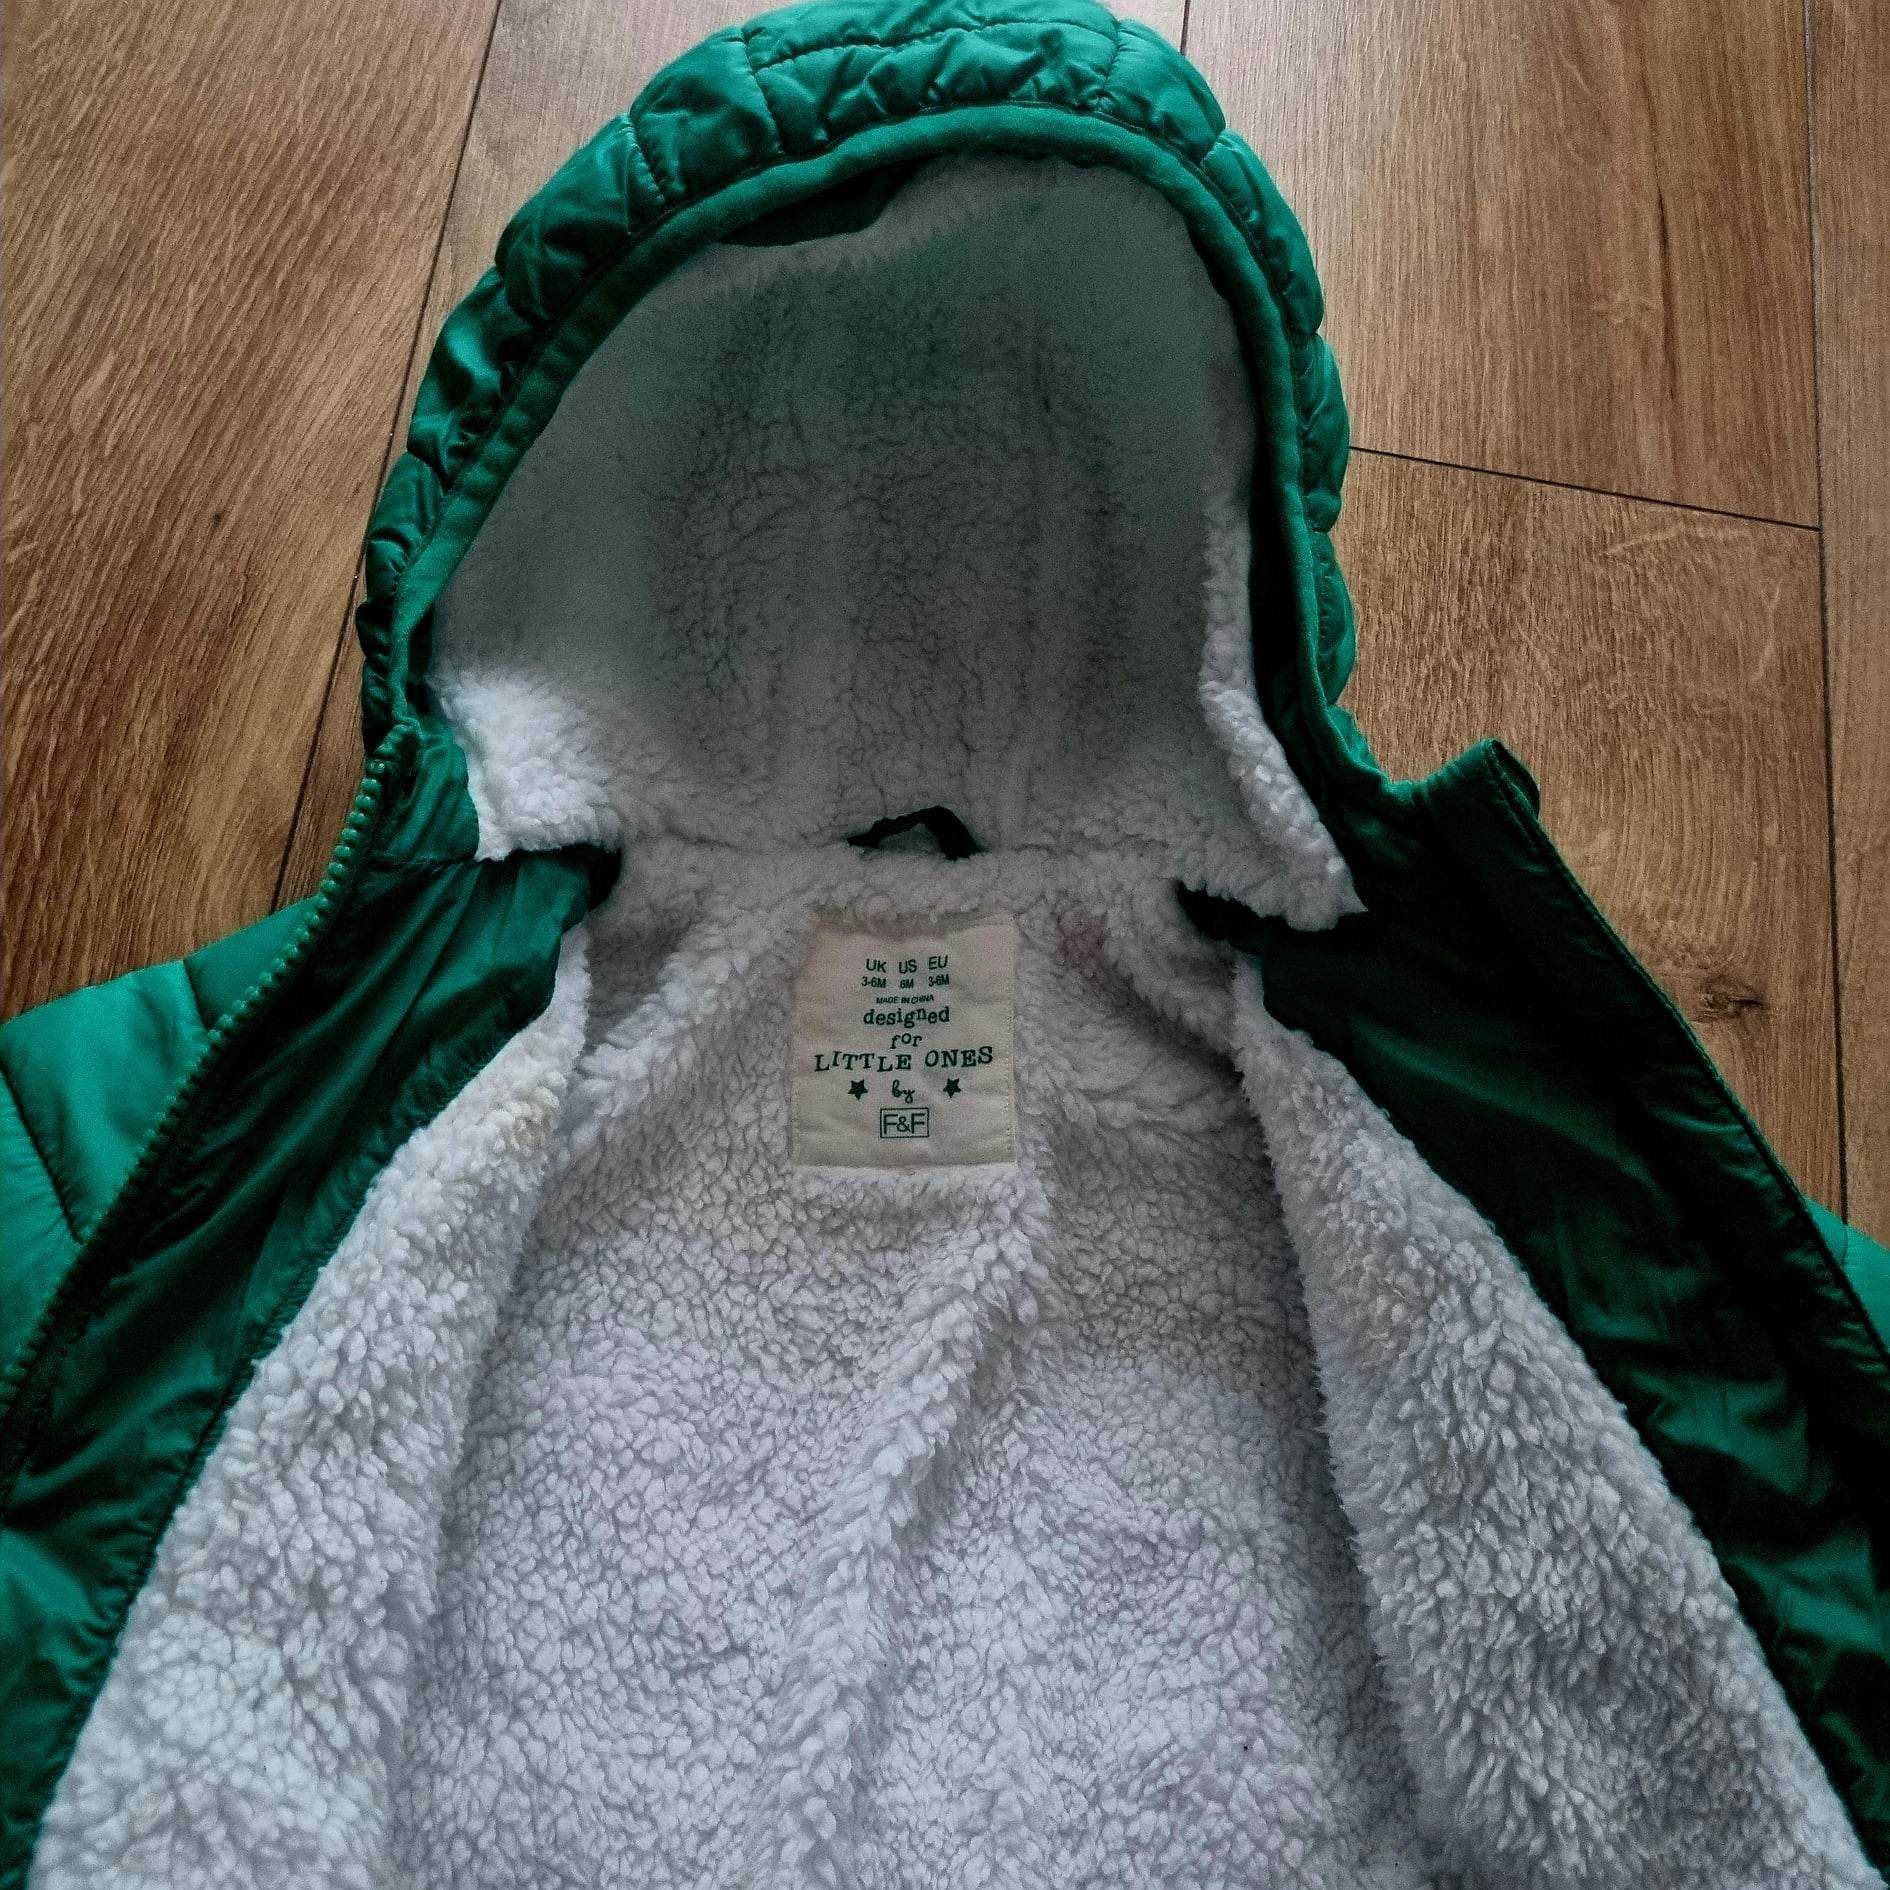 Zimowa kurtka niemowlęca firmy F&F, rozmiar 68 ( 3-6 miesięcy).